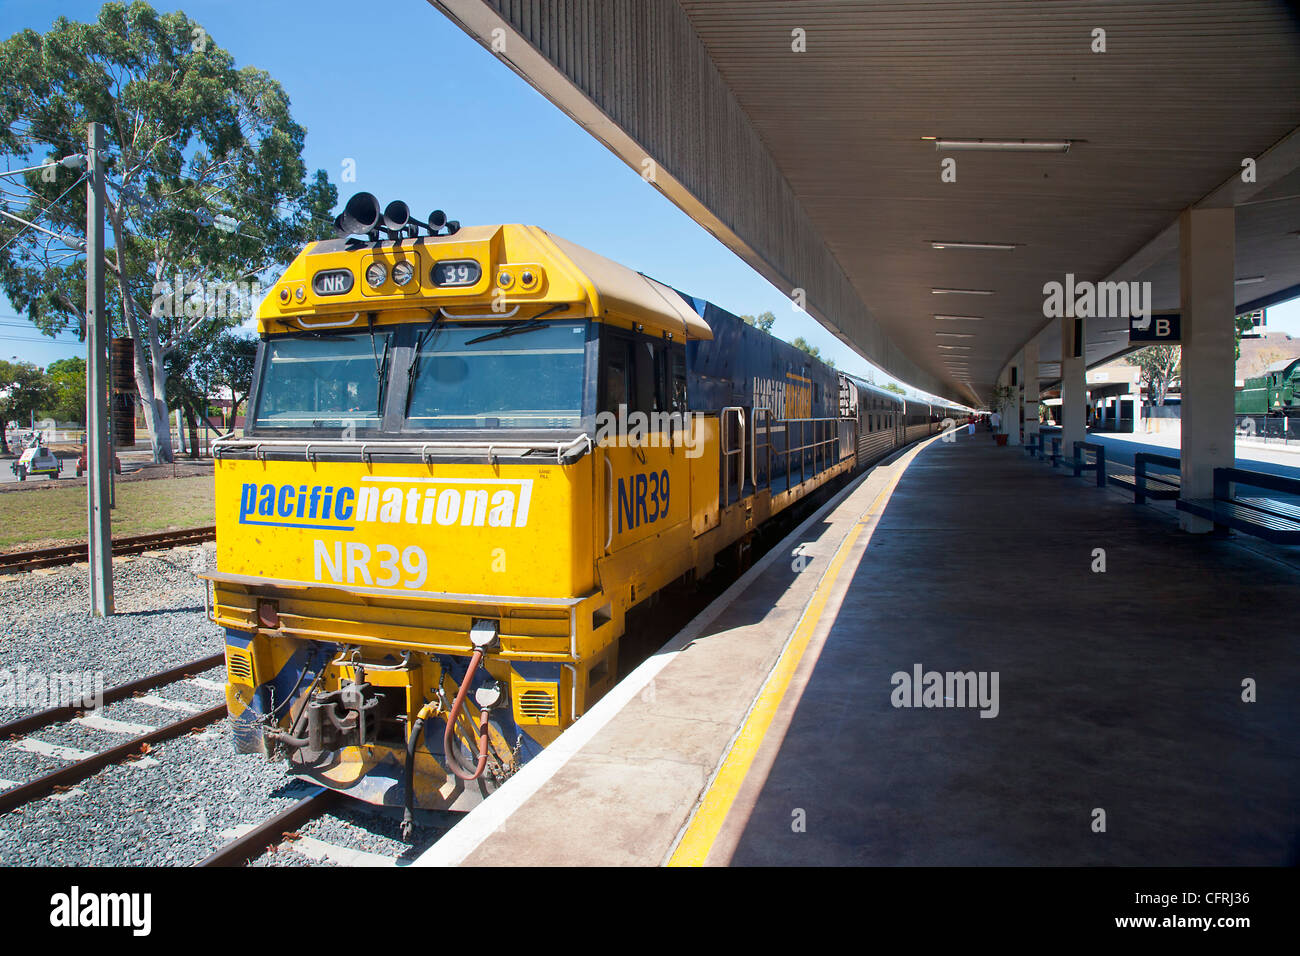 L'Inde Pacific Train s'est arrêté à Adelaide Banque D'Images